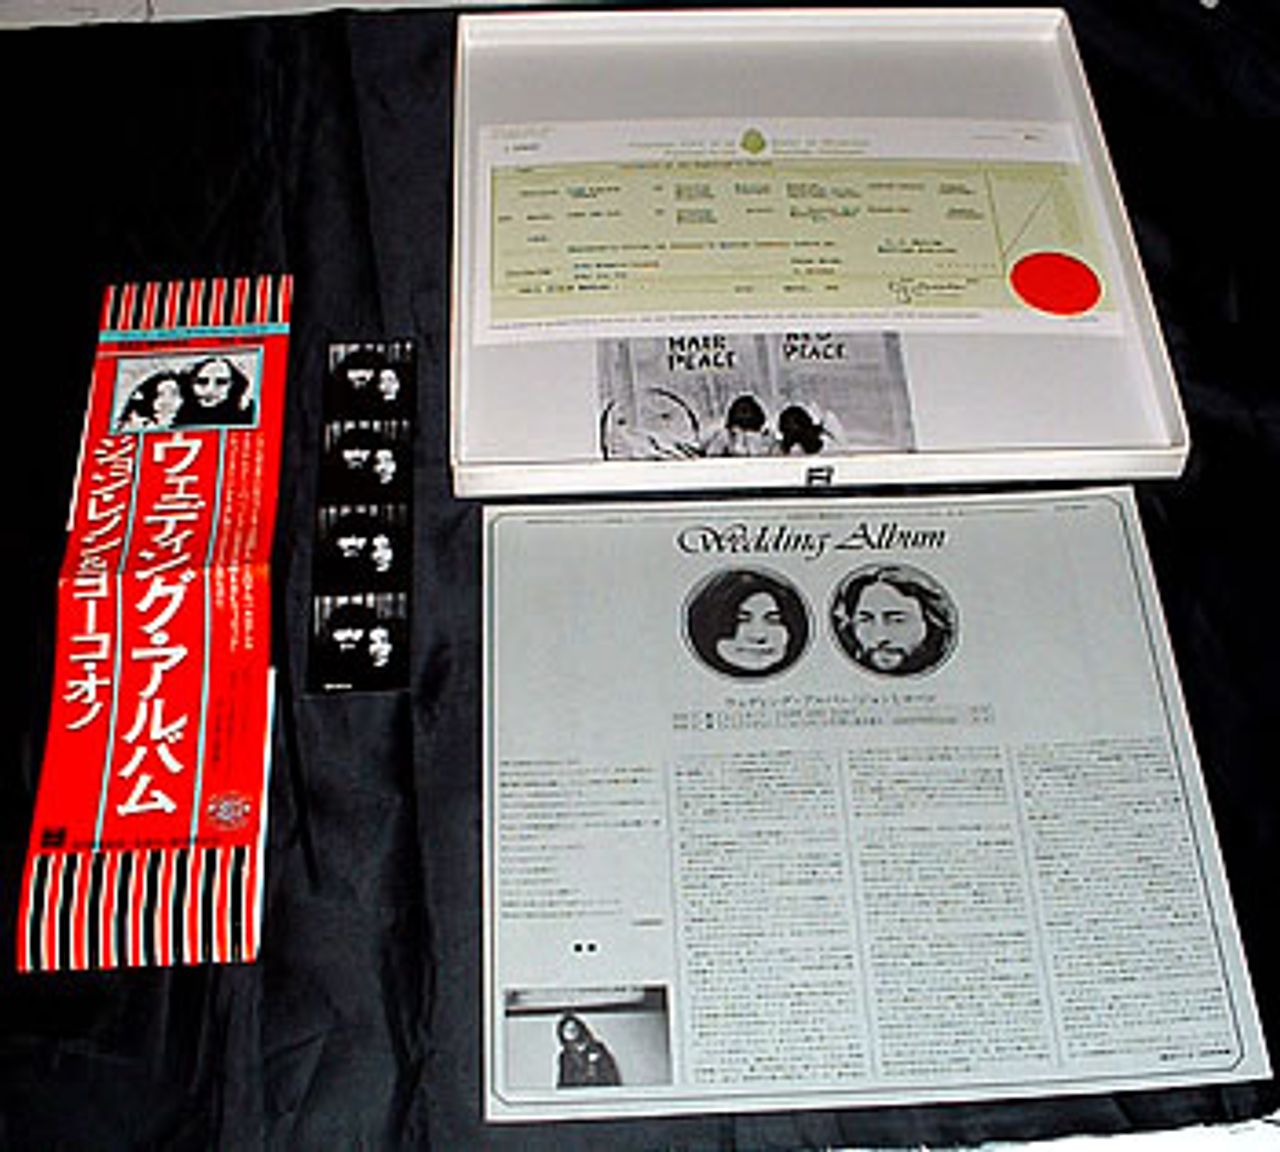 John Lennon Wedding Album - Complete + Obi Japanese Vinyl box set